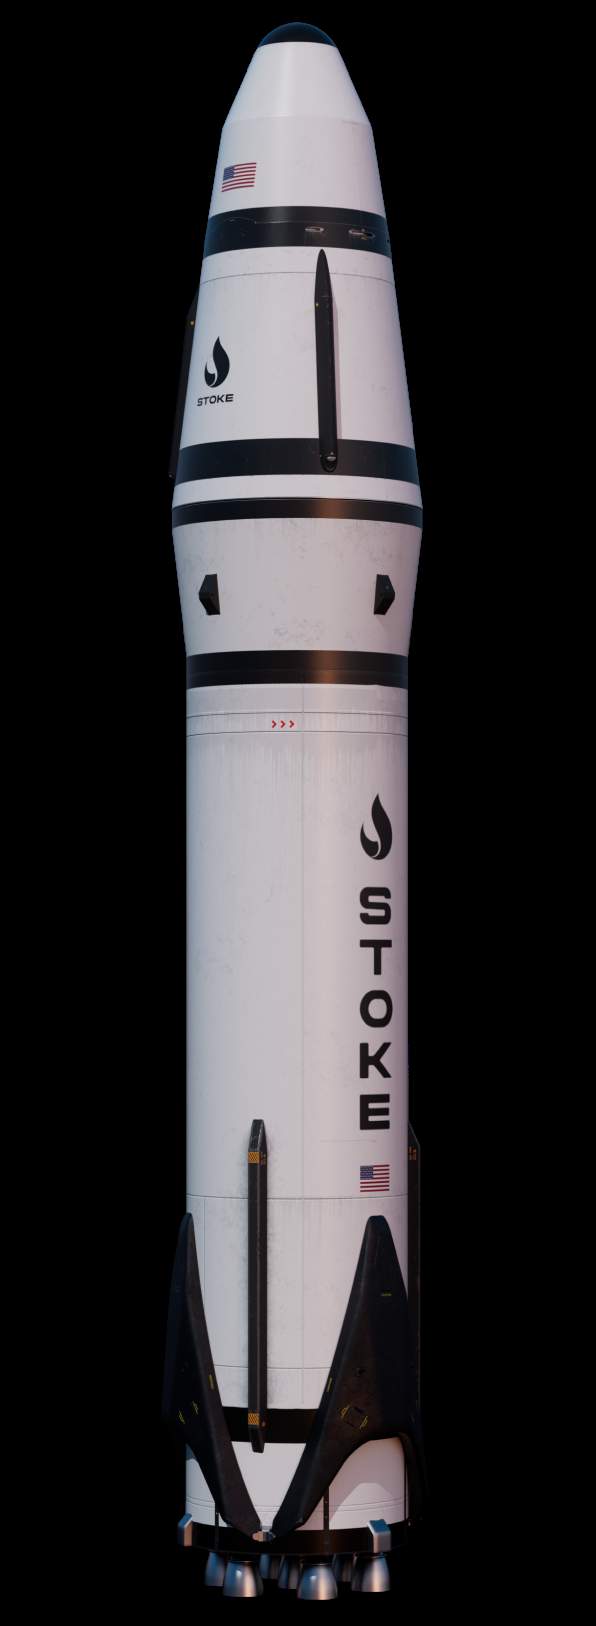 website overhaul 2022 (Stoke Space) rocket render 1 (c)